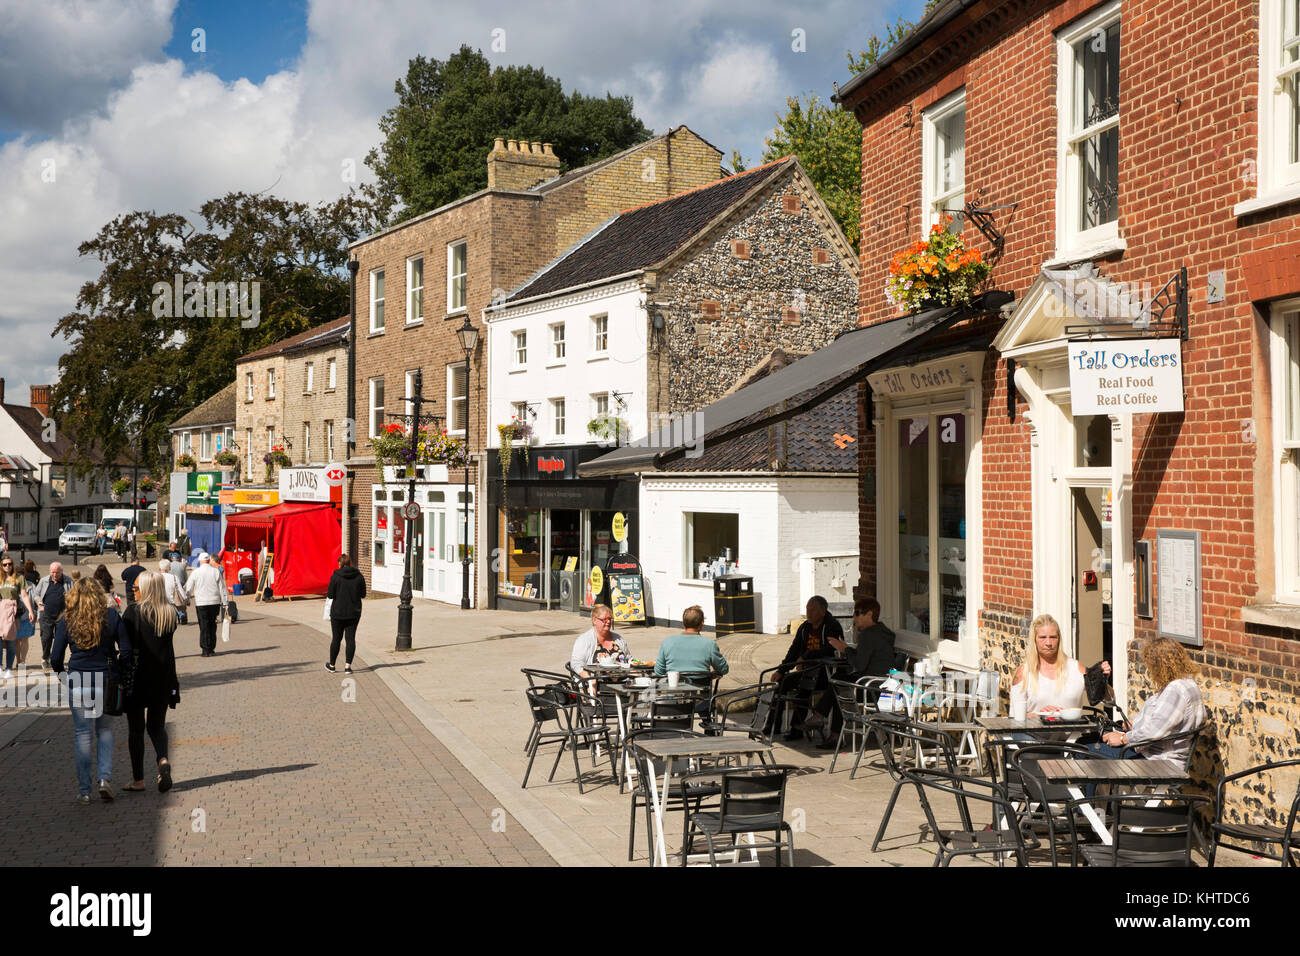 Royaume-uni, Angleterre, Norfolk, la Thetford, Brecks, King Street, les visiteurs dans la zone commerçante piétonne assis dehors, les dernières commandes coffee shop Banque D'Images